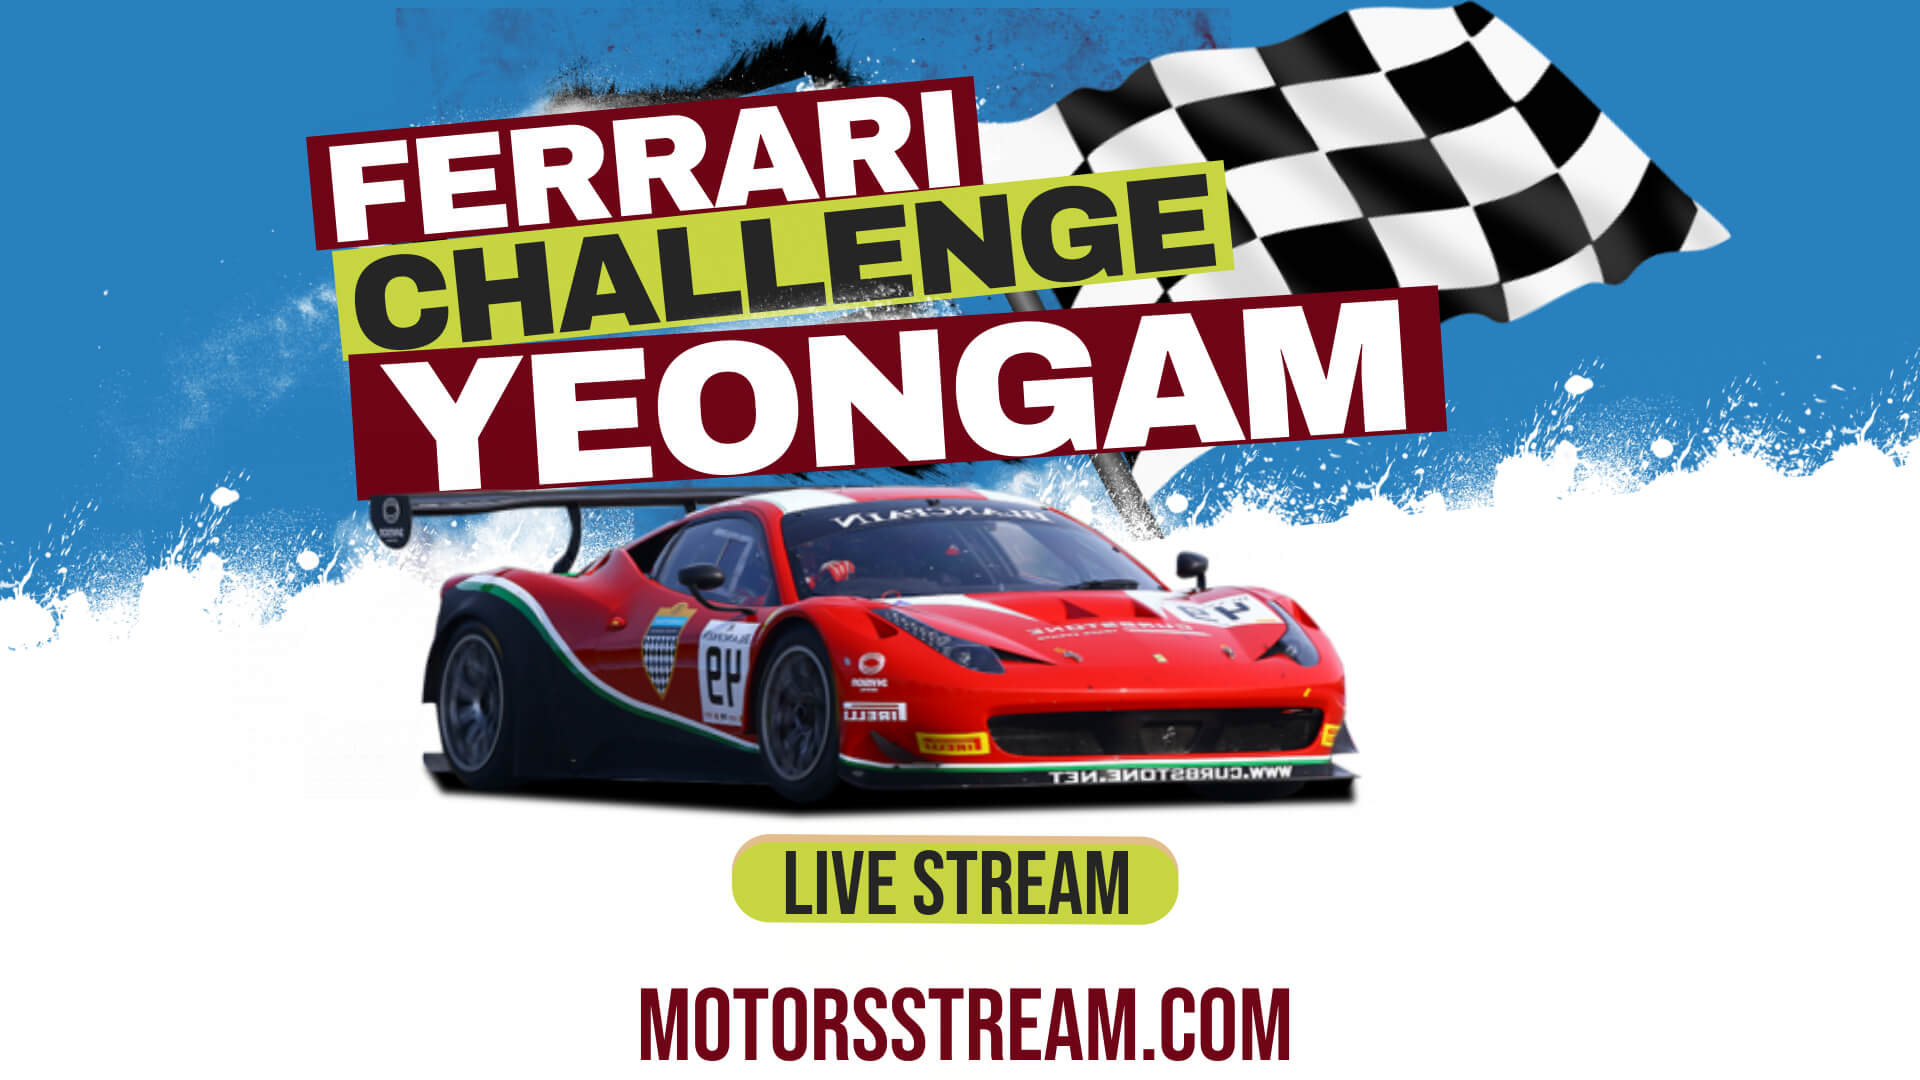 yeongam-ferrari-challenge-race-live-stream